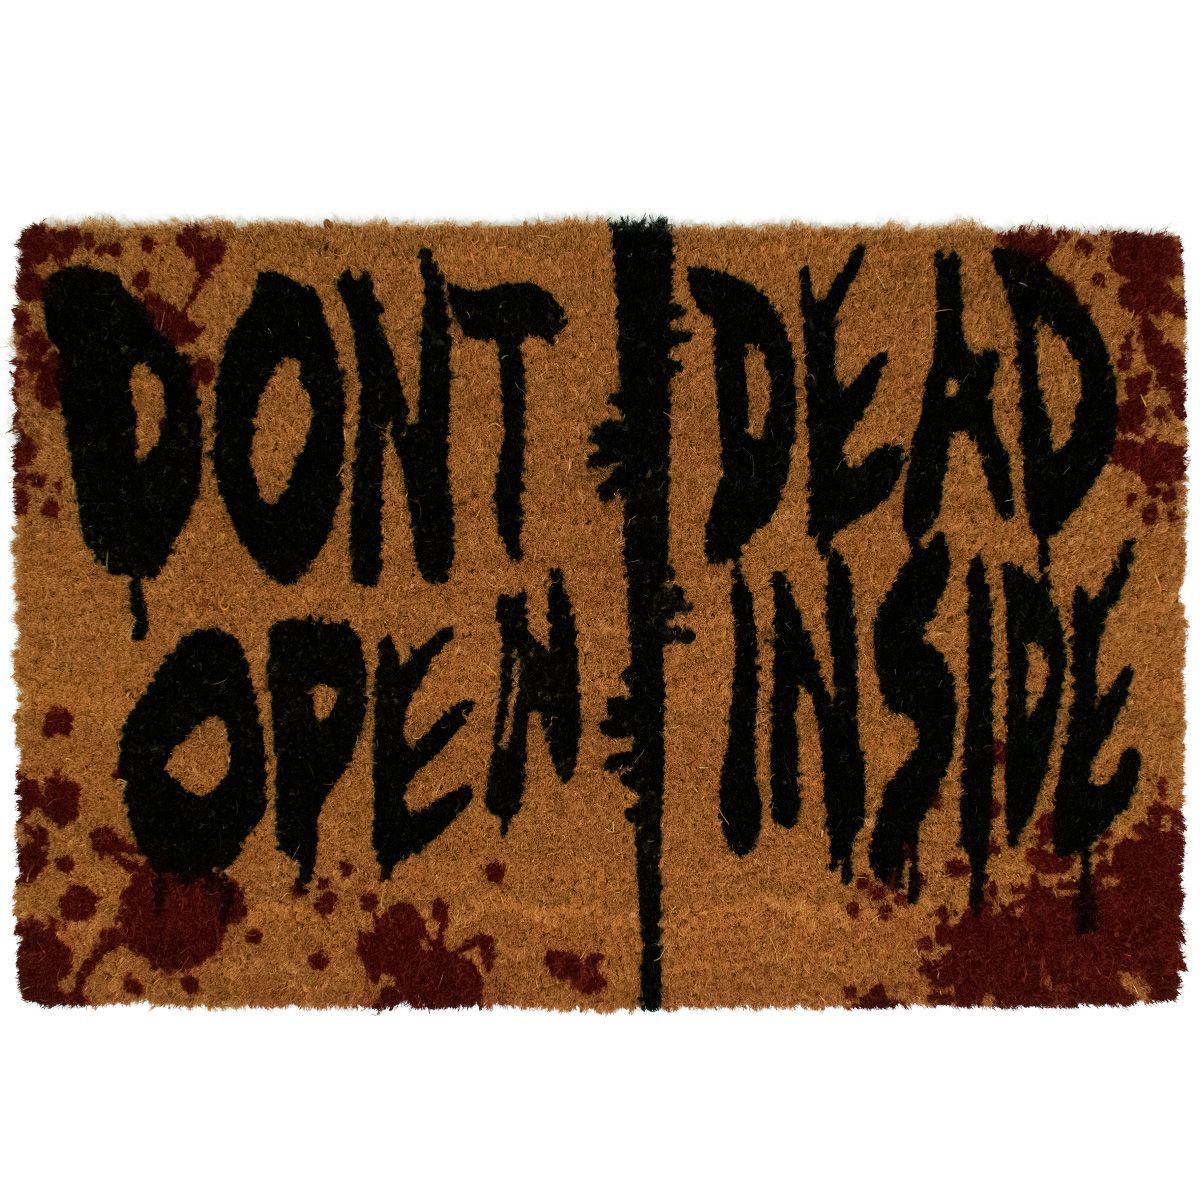 Walking Dead paillasson Don't Open Dead Inside 40 x 60 cm